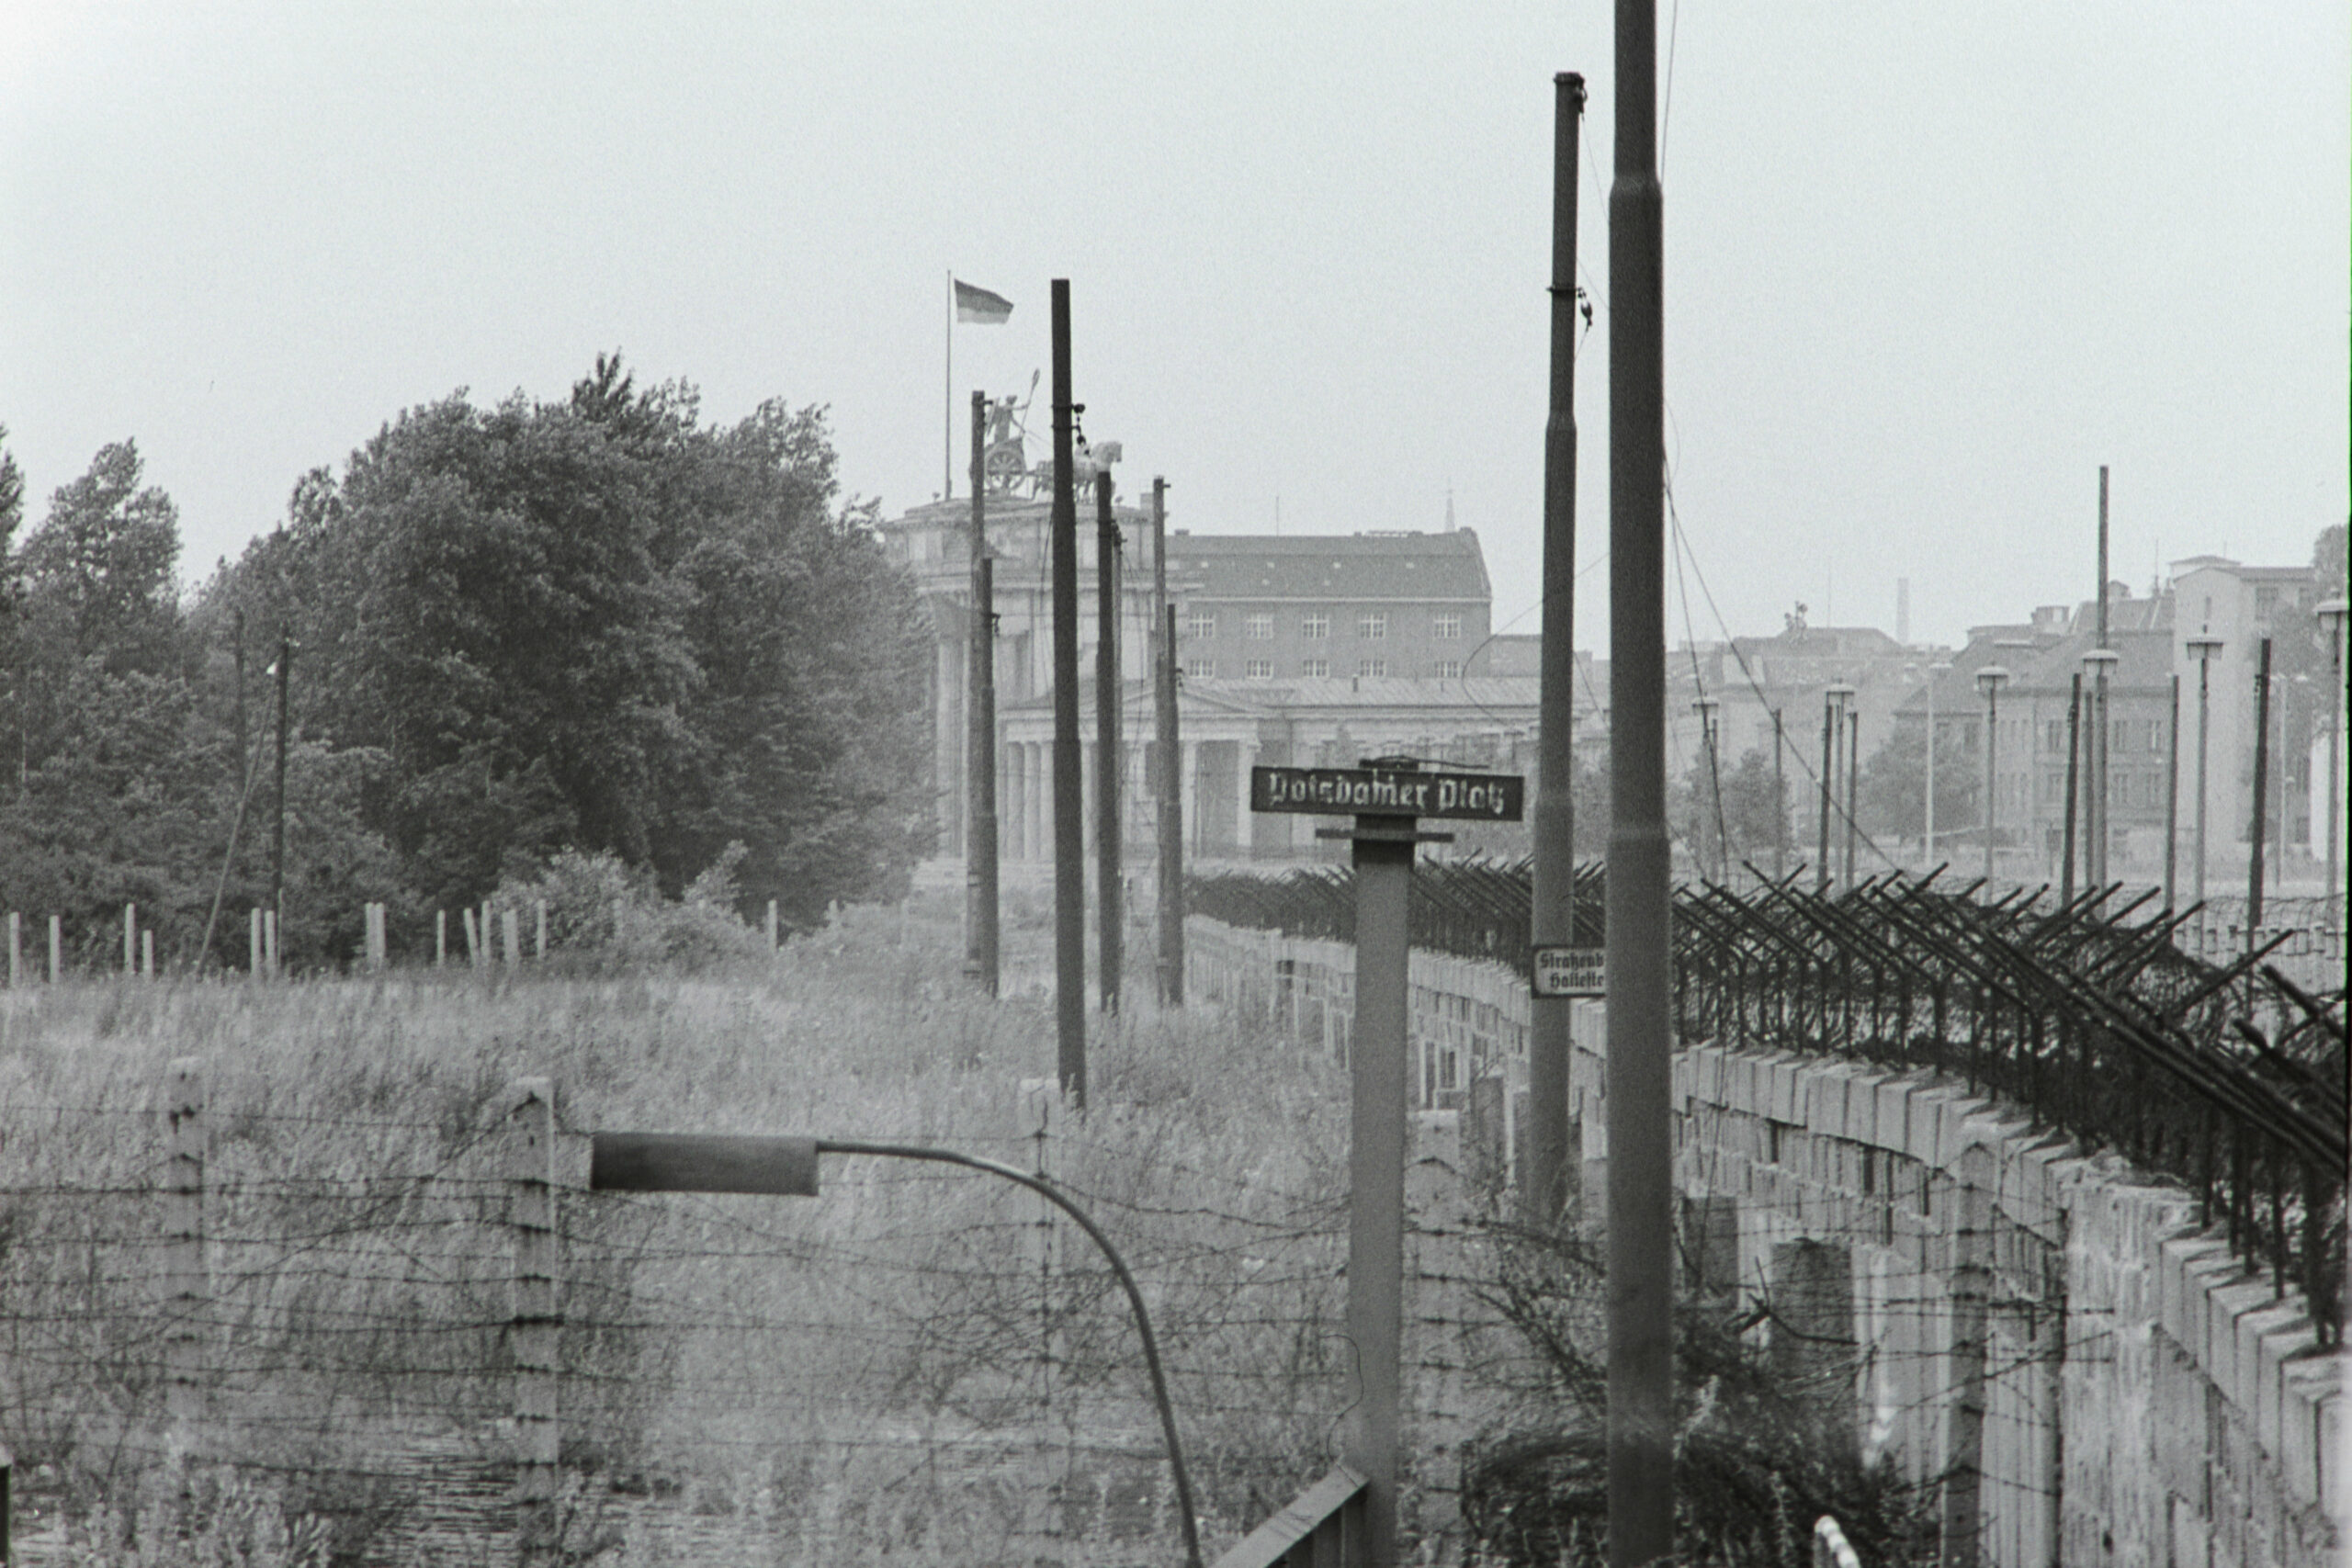 Eine überwucherte Brache, Stacheldraht und die Mauer – so sah 1964 der Potsdamer Platz aus. Foto: Imago/Serienlicht